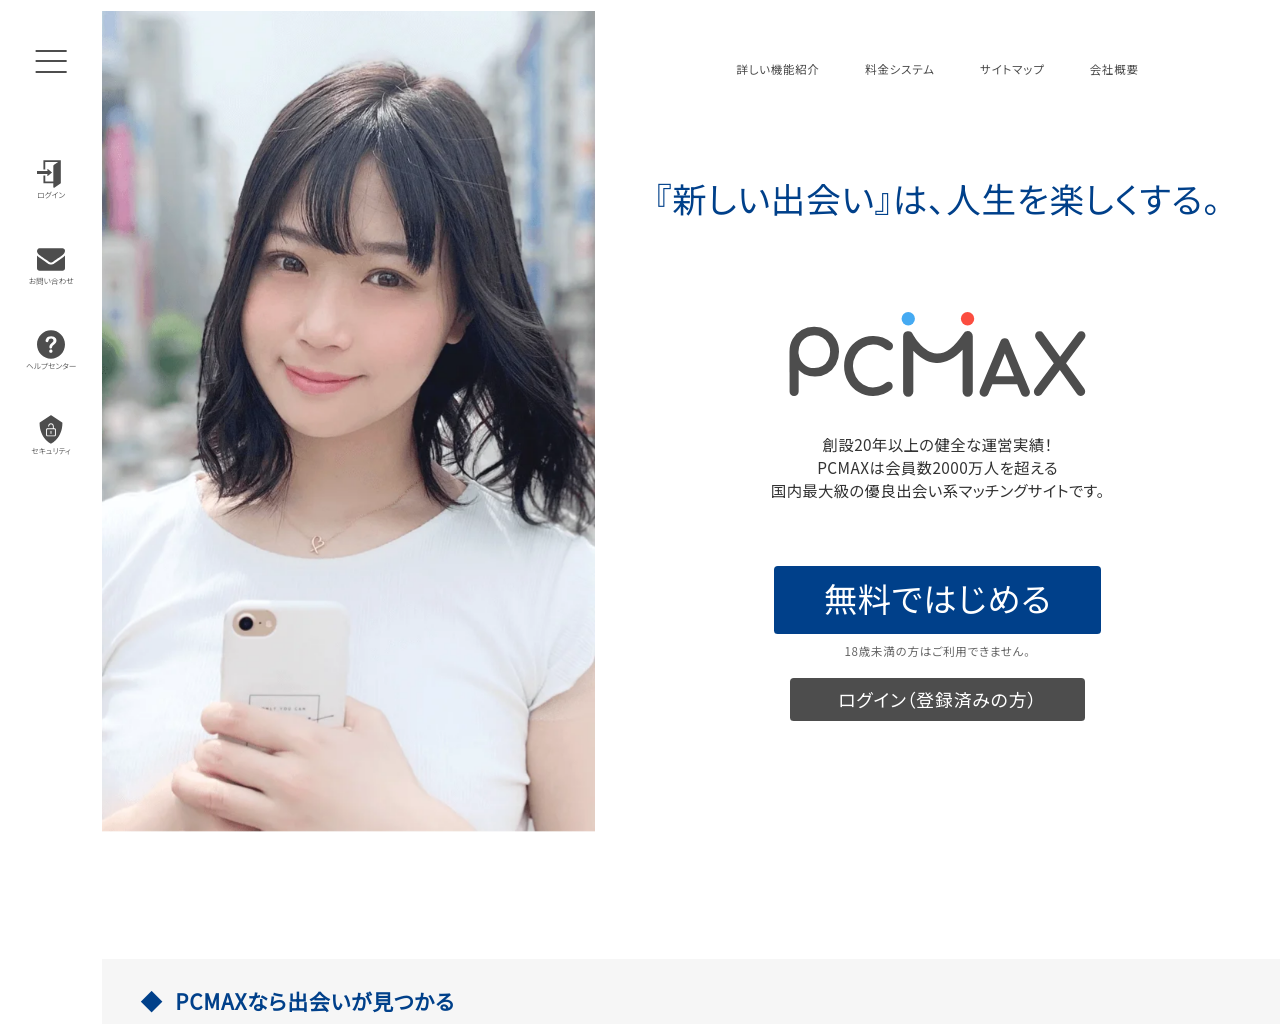 pcmax.jp